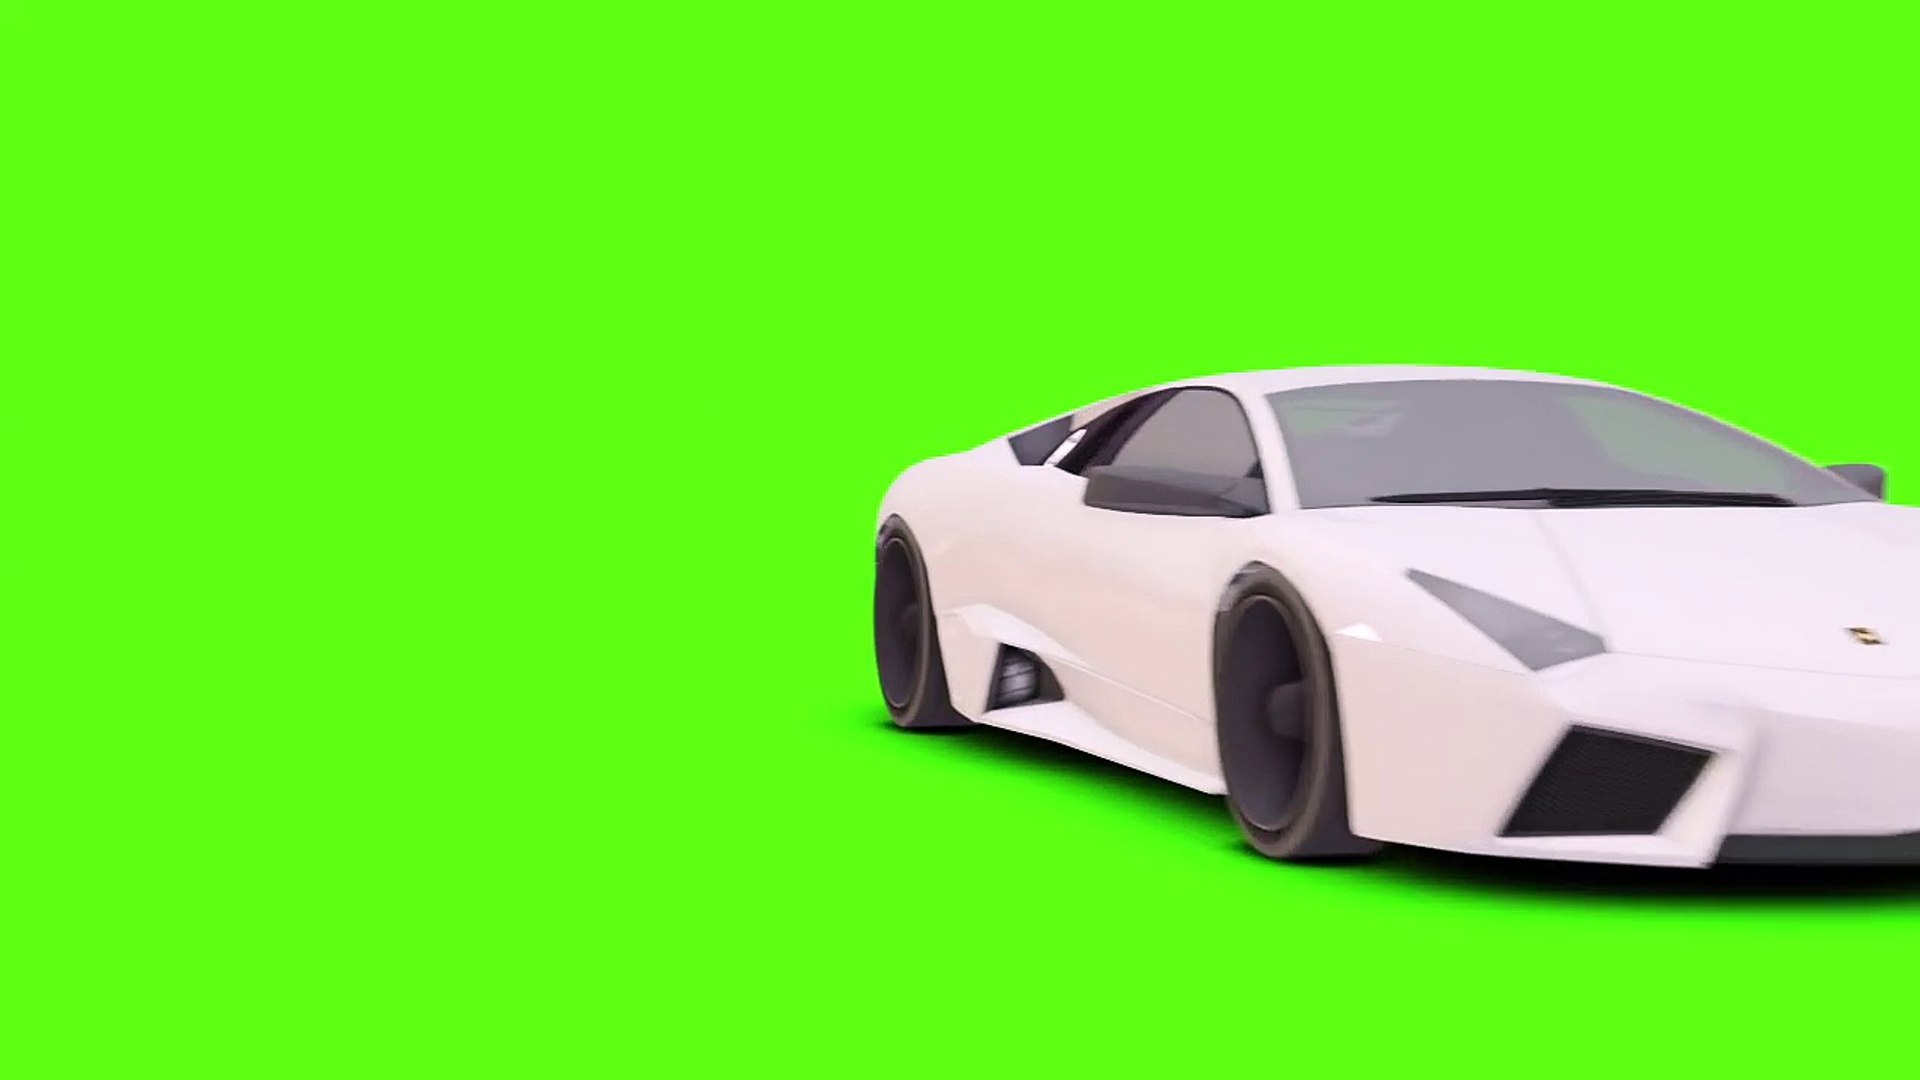 Cùng trải nghiệm làm tay lái của chiếc xe Lamborghini trên màn hình xanh đầy chất lượng và mượt mà. Nếu bạn muốn cảm nhận được cảm giác đua xe thật sự, đây chính là điều bạn đang cần tìm kiếm.